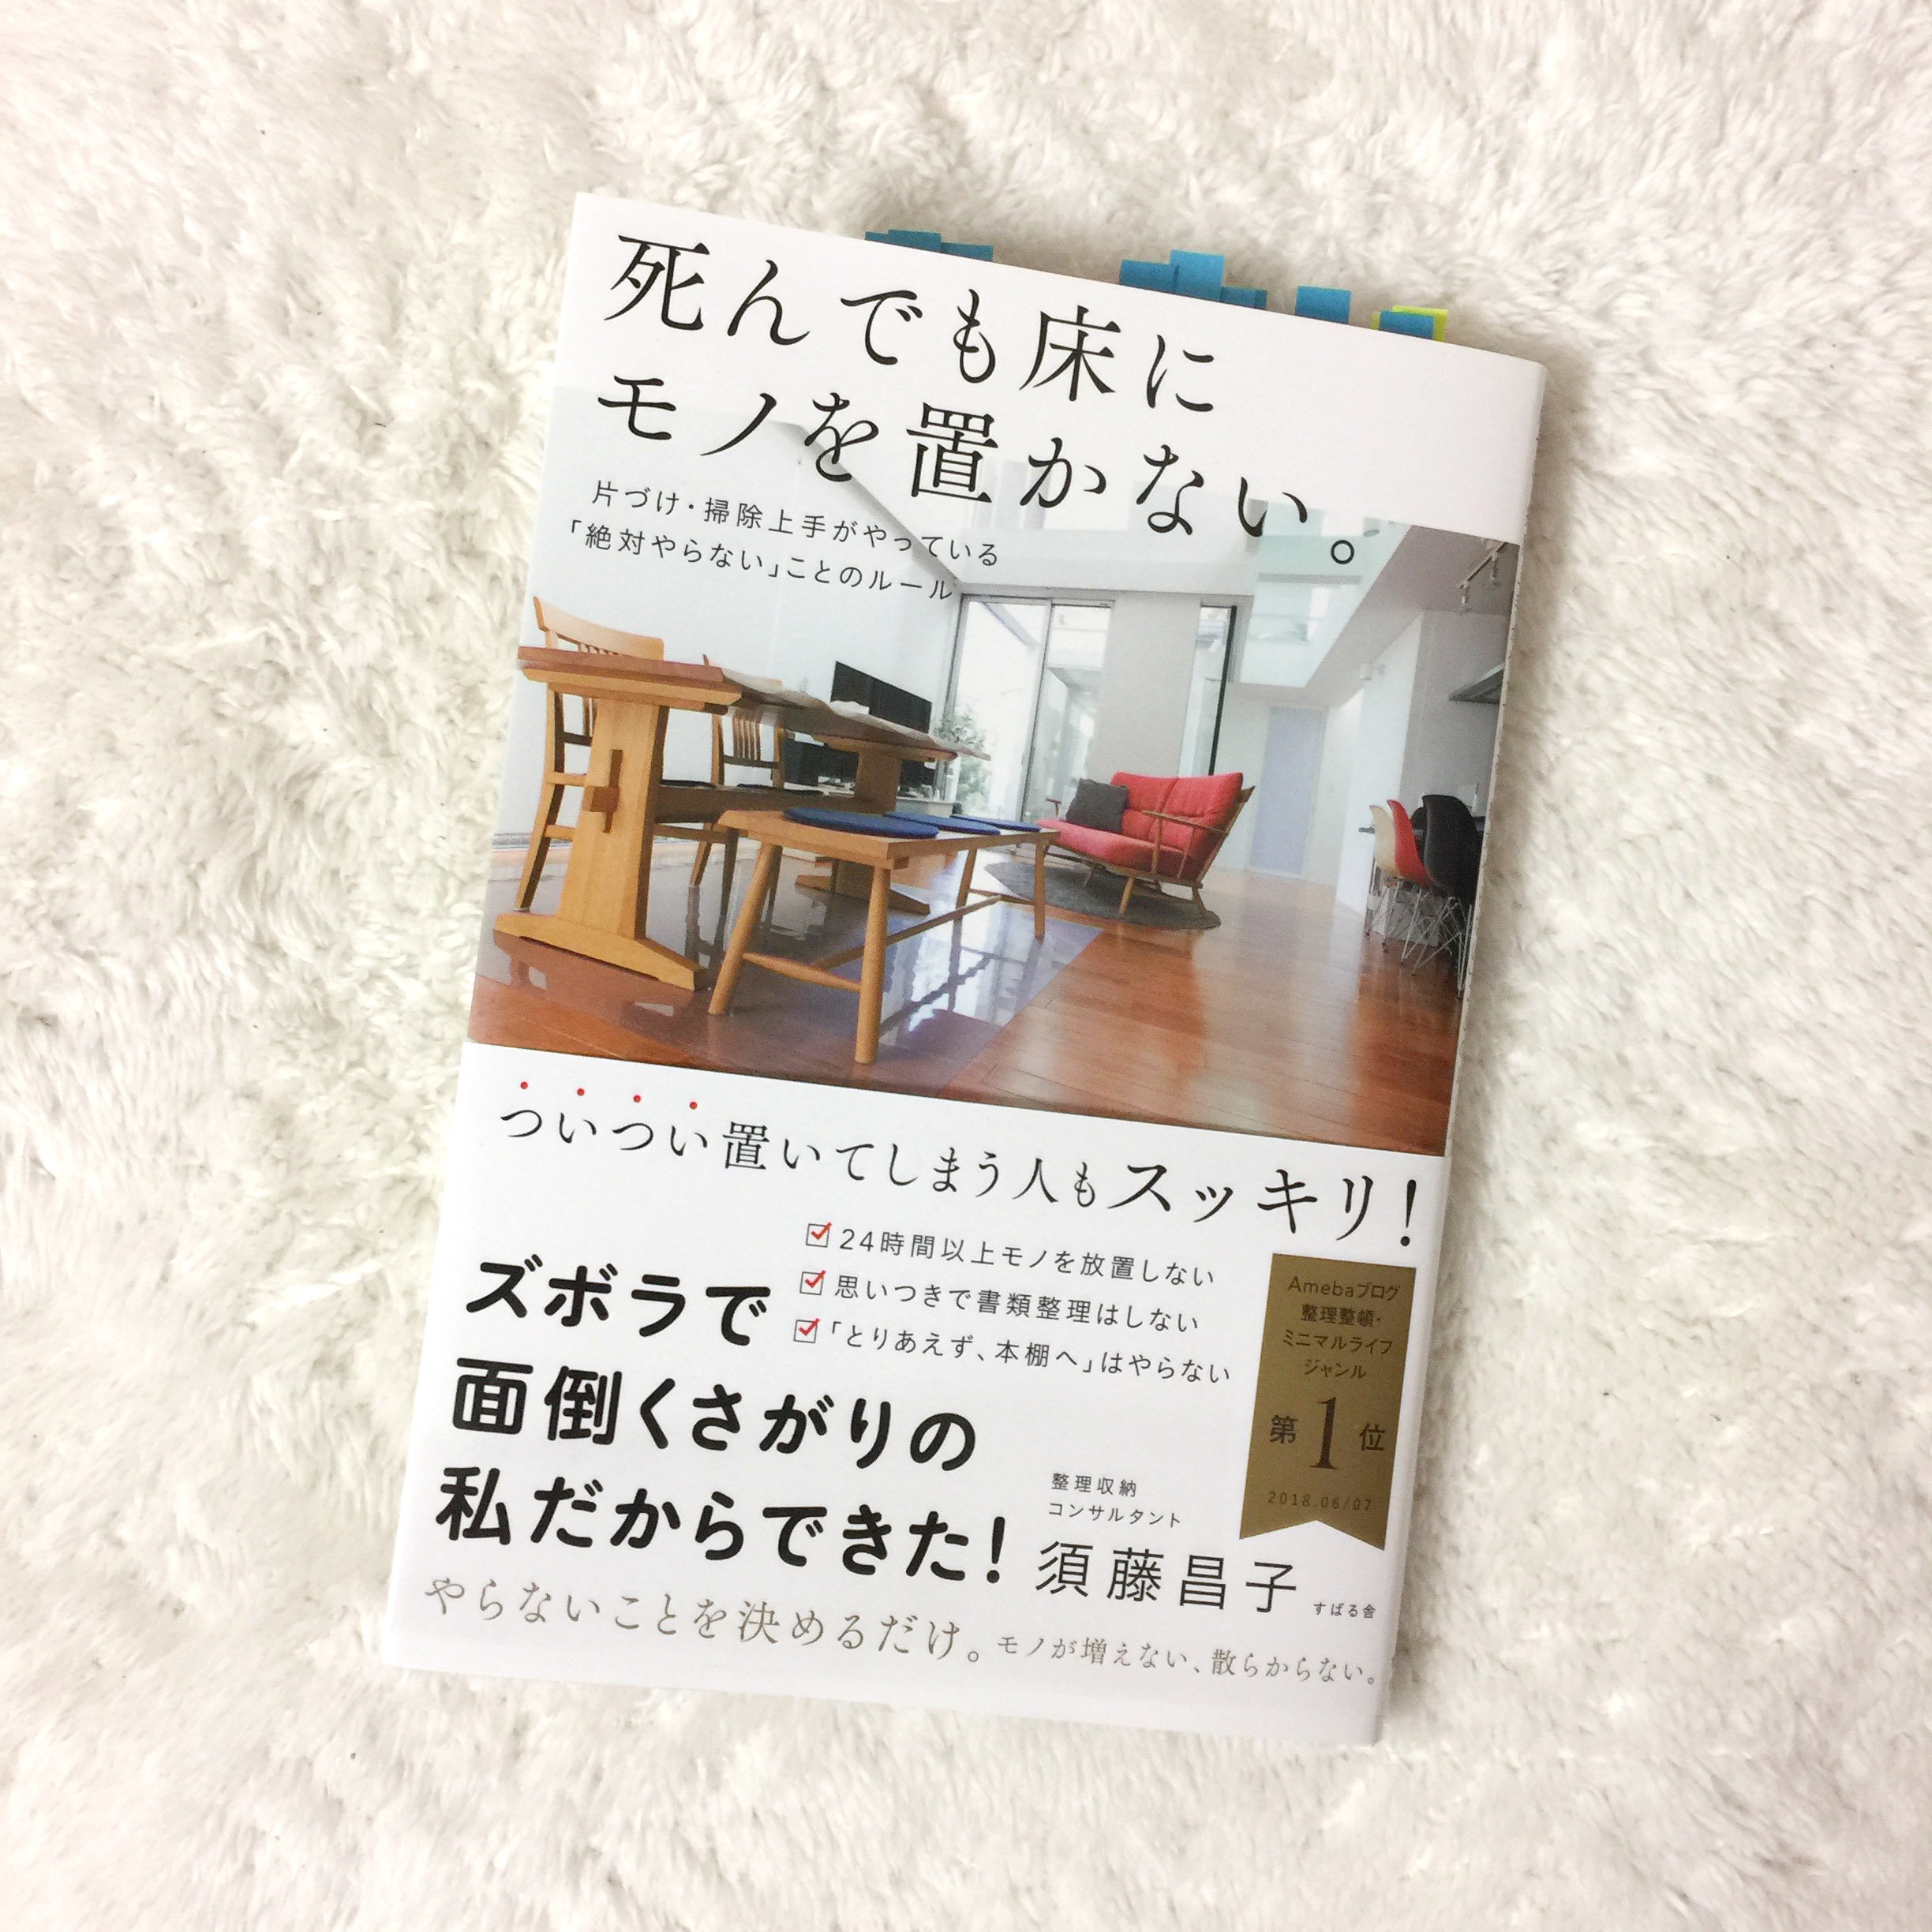 本「死んでも床にモノを置かない」須藤昌子著を読んで、なぜ捨て